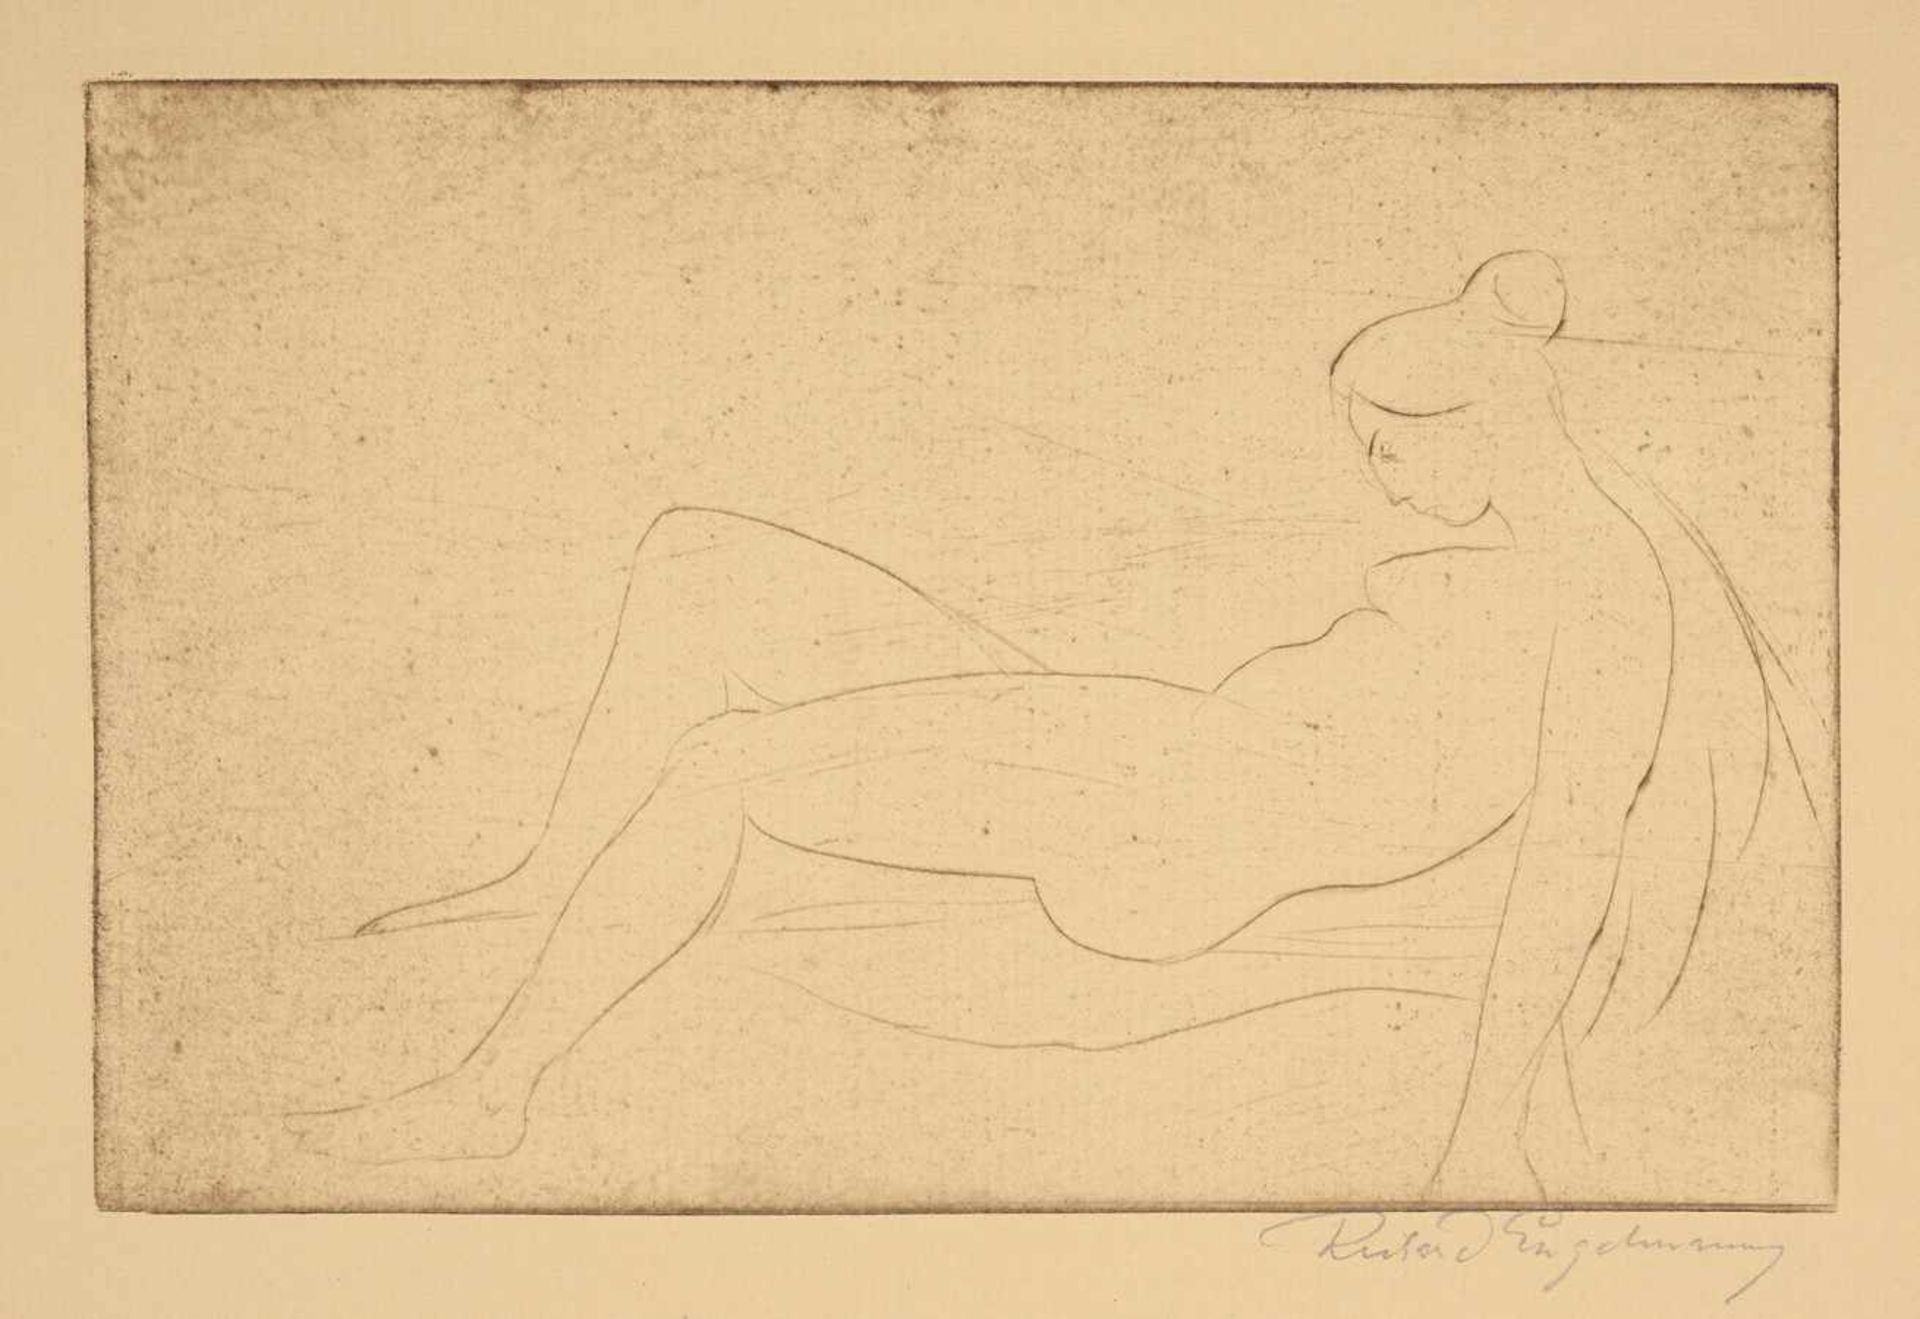 Richard Engelmann. Bildhauer-Radierungen. Sechs Radierungen. 1922. Ca. 19 : 19 - 19 : 30 cm. - Image 4 of 4